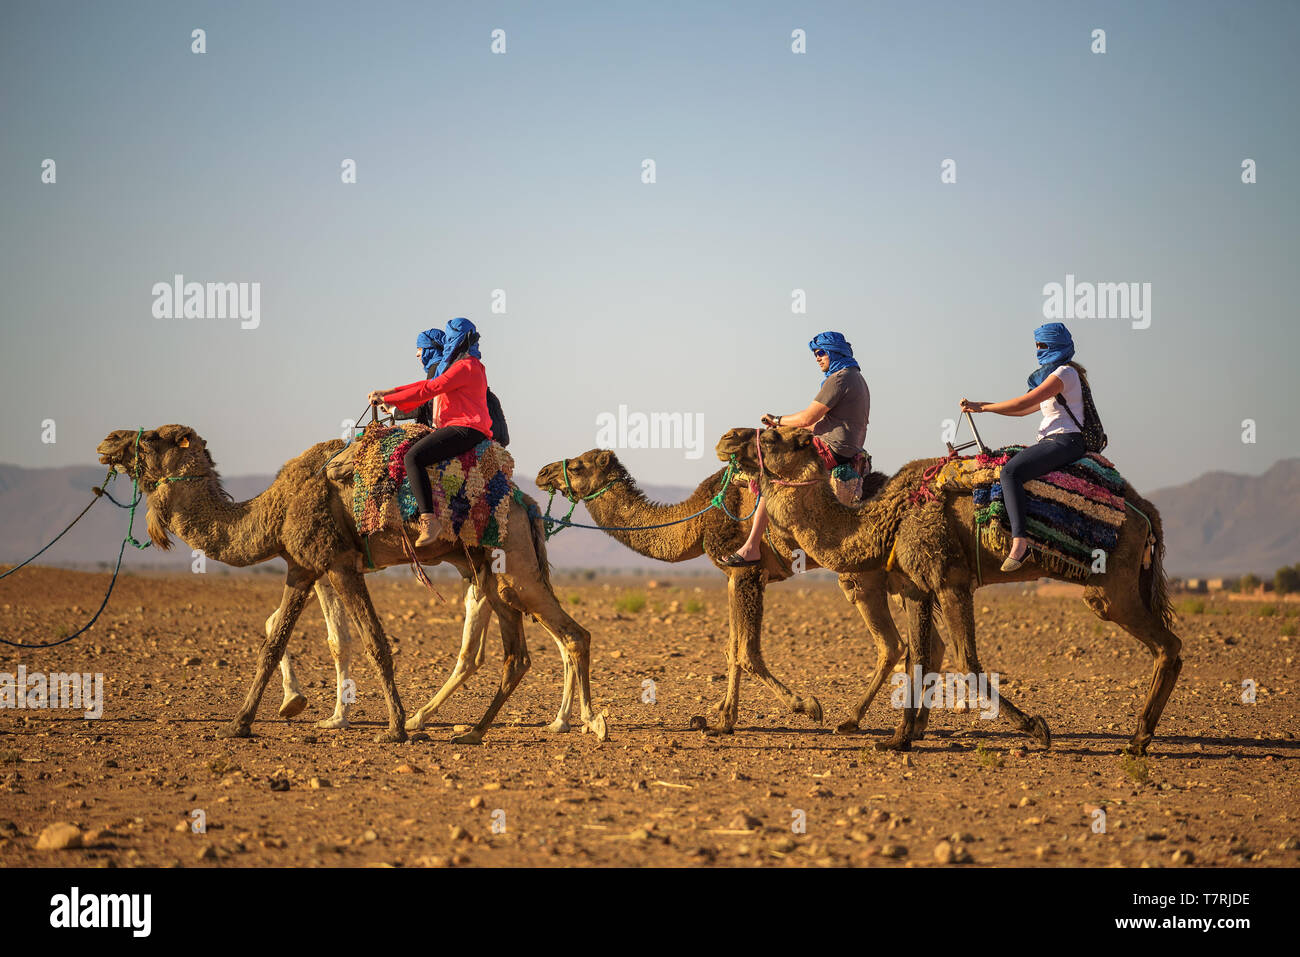 Caravane de chameaux auprès des touristes traversant le désert du Sahara Banque D'Images